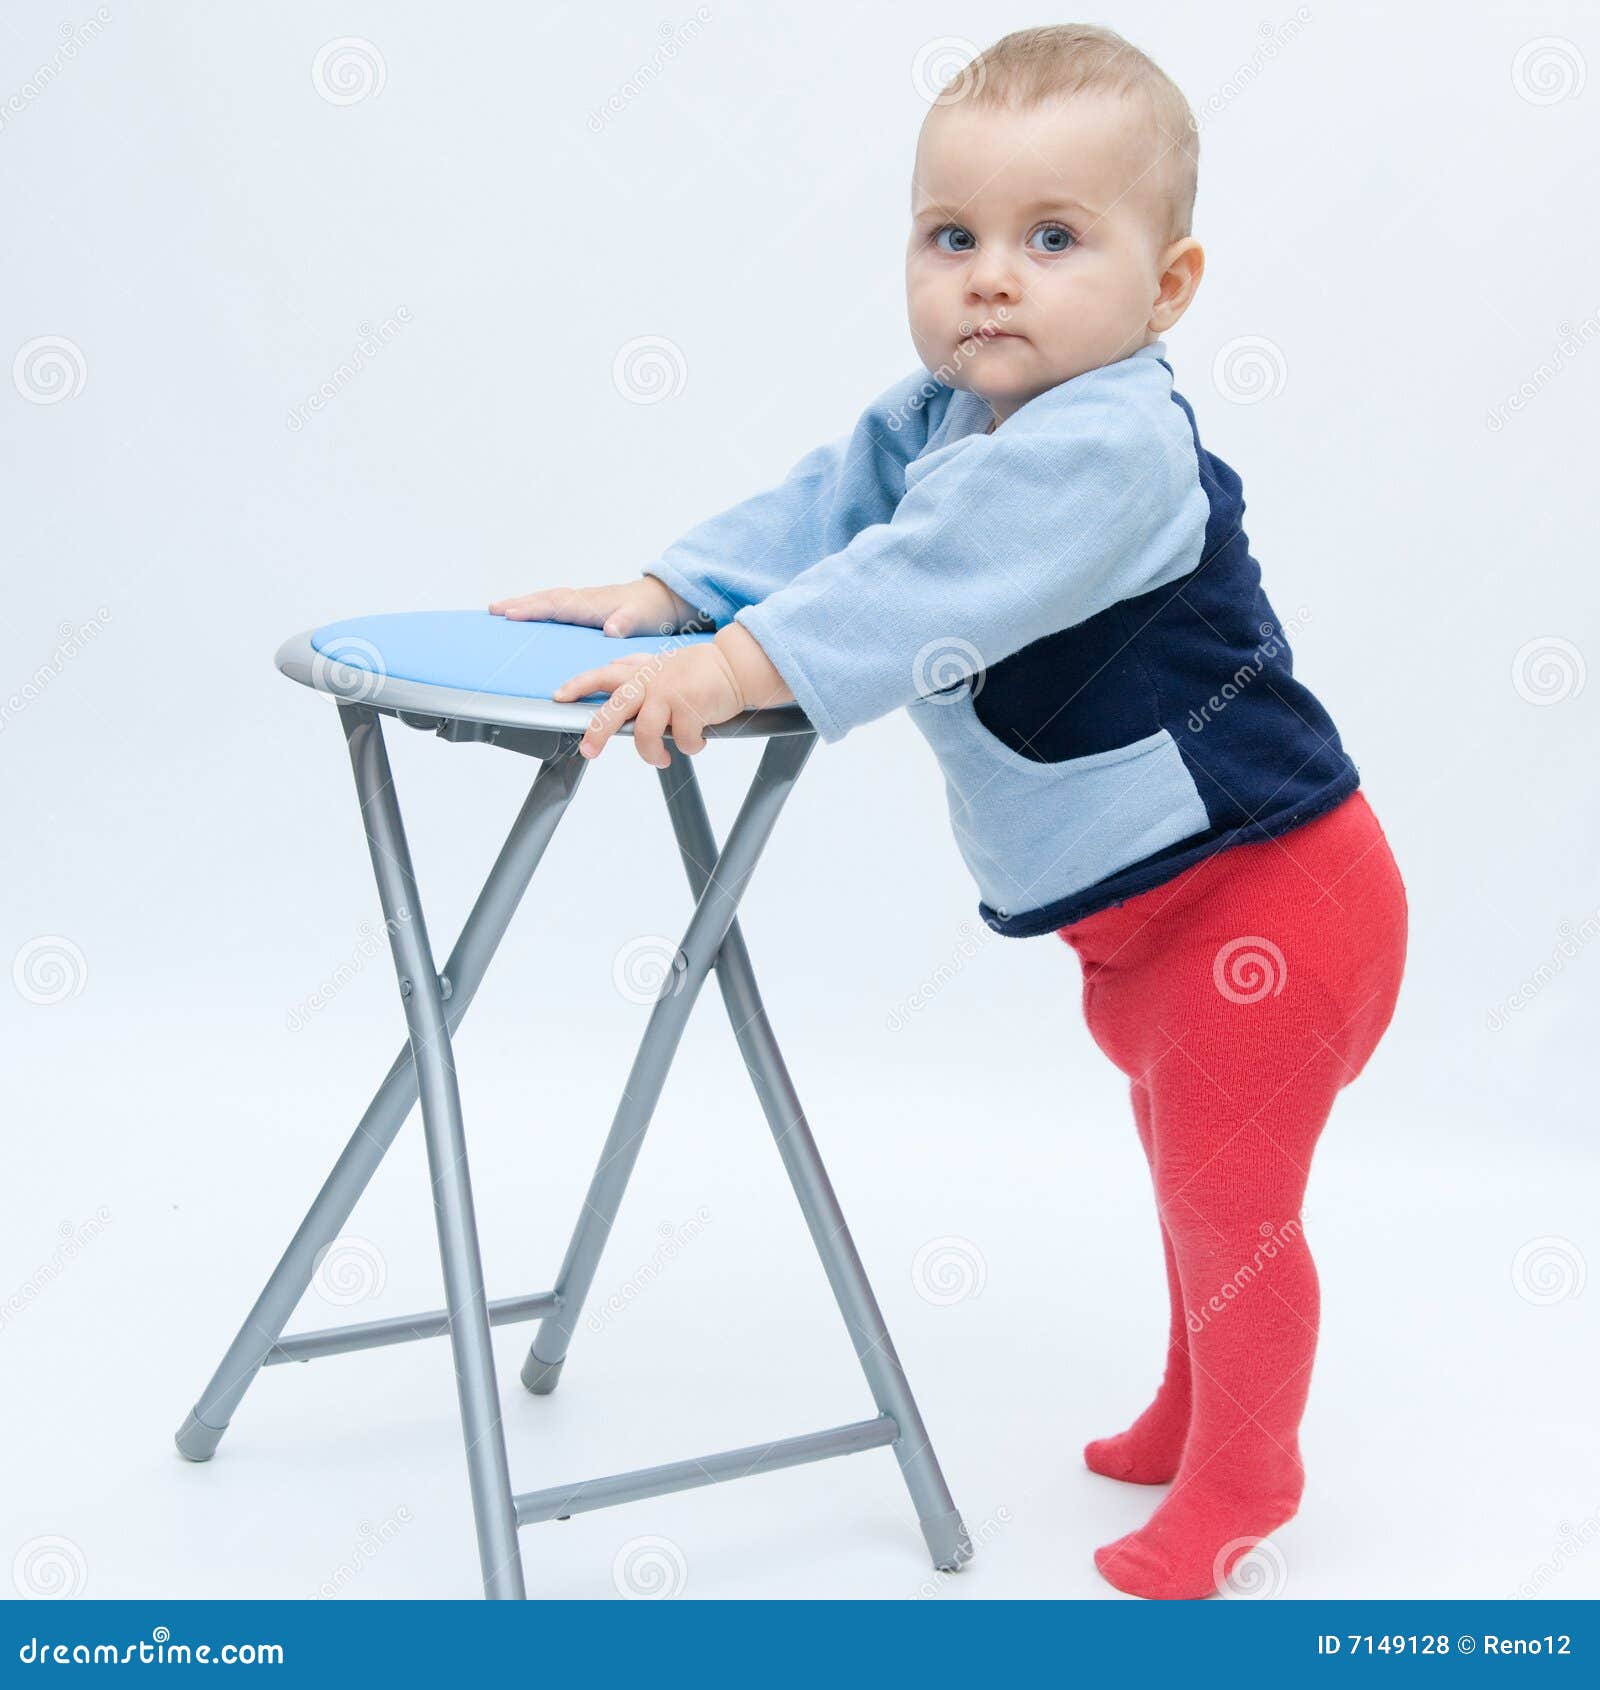 общий стол для ребенка в 10 месяцев